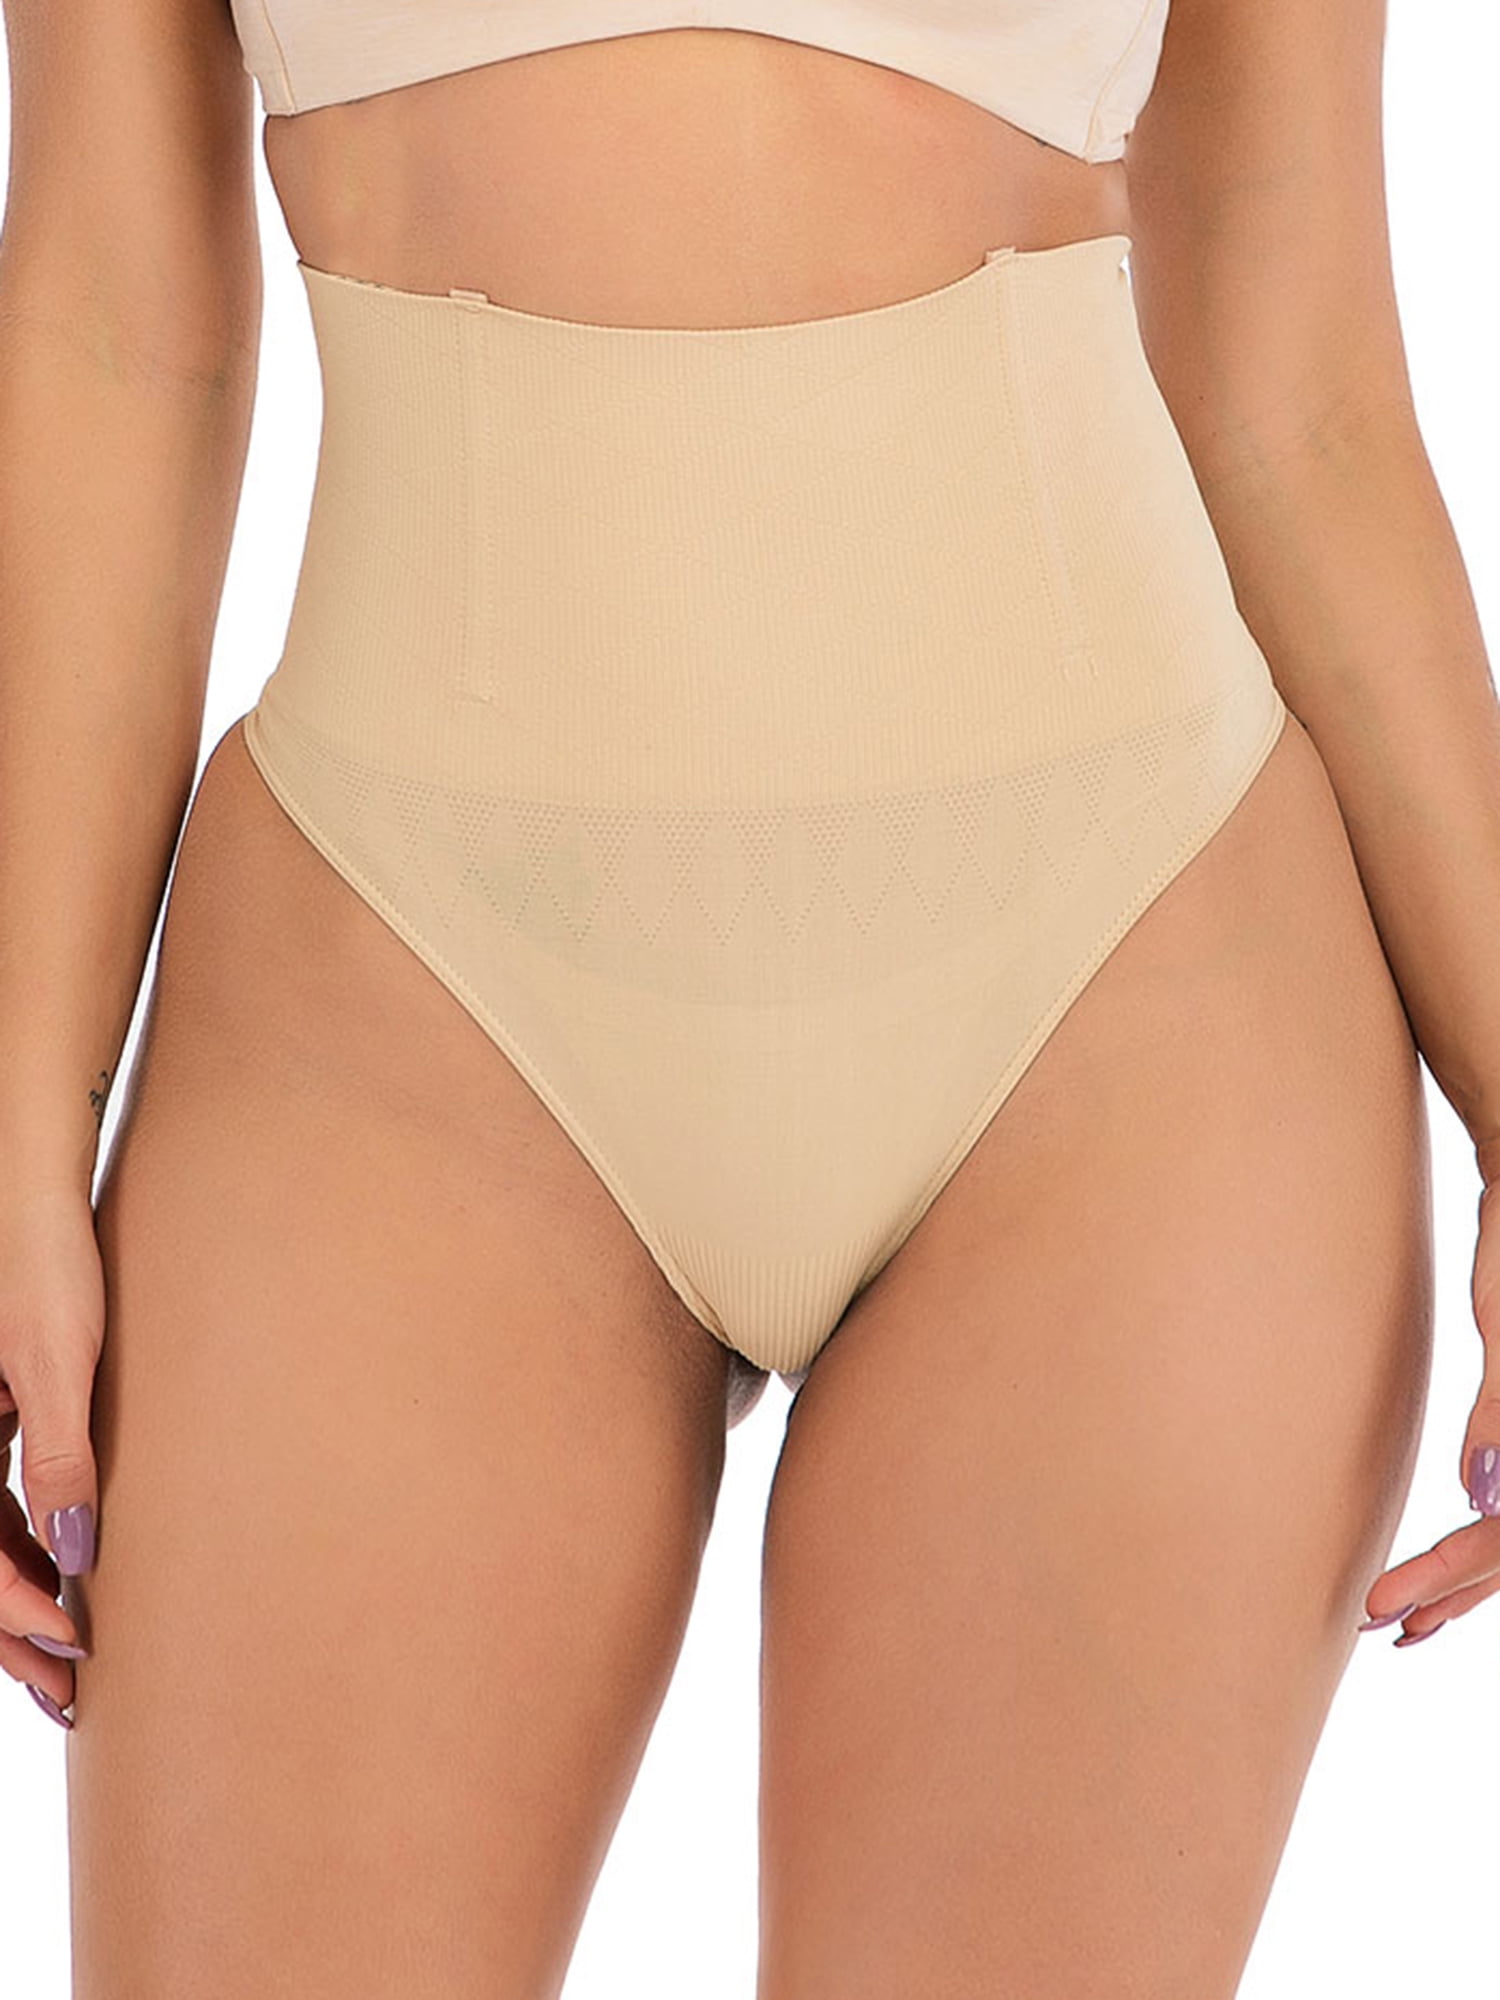 Women Shapewear Control Panties Body Shaping Butt Lifter Hip Enhancer  Seamless Underwear Hi- Waist Short Black/Apricot